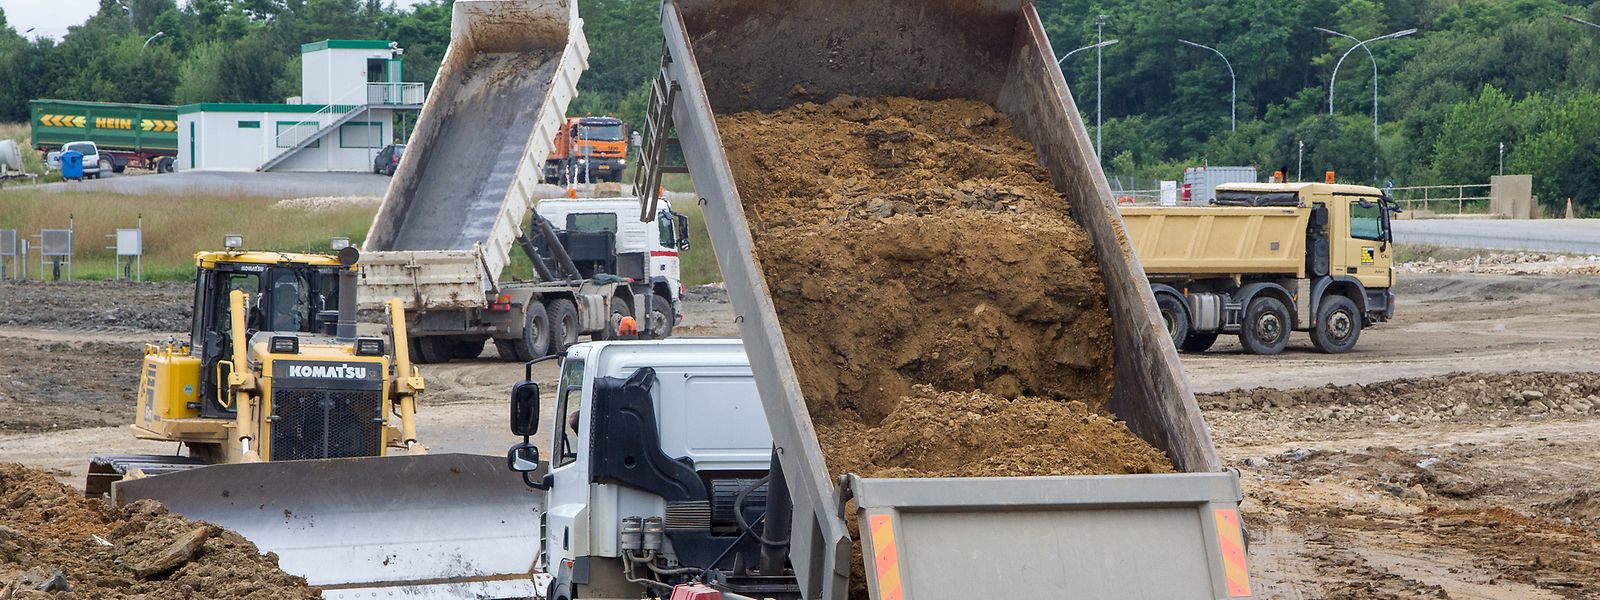 Après deux ans seulement, la décharge de déchets de construction de Strassen était remplie. Les matériaux livrés se composent à 95% de terre excavée et à 5% de gravats.